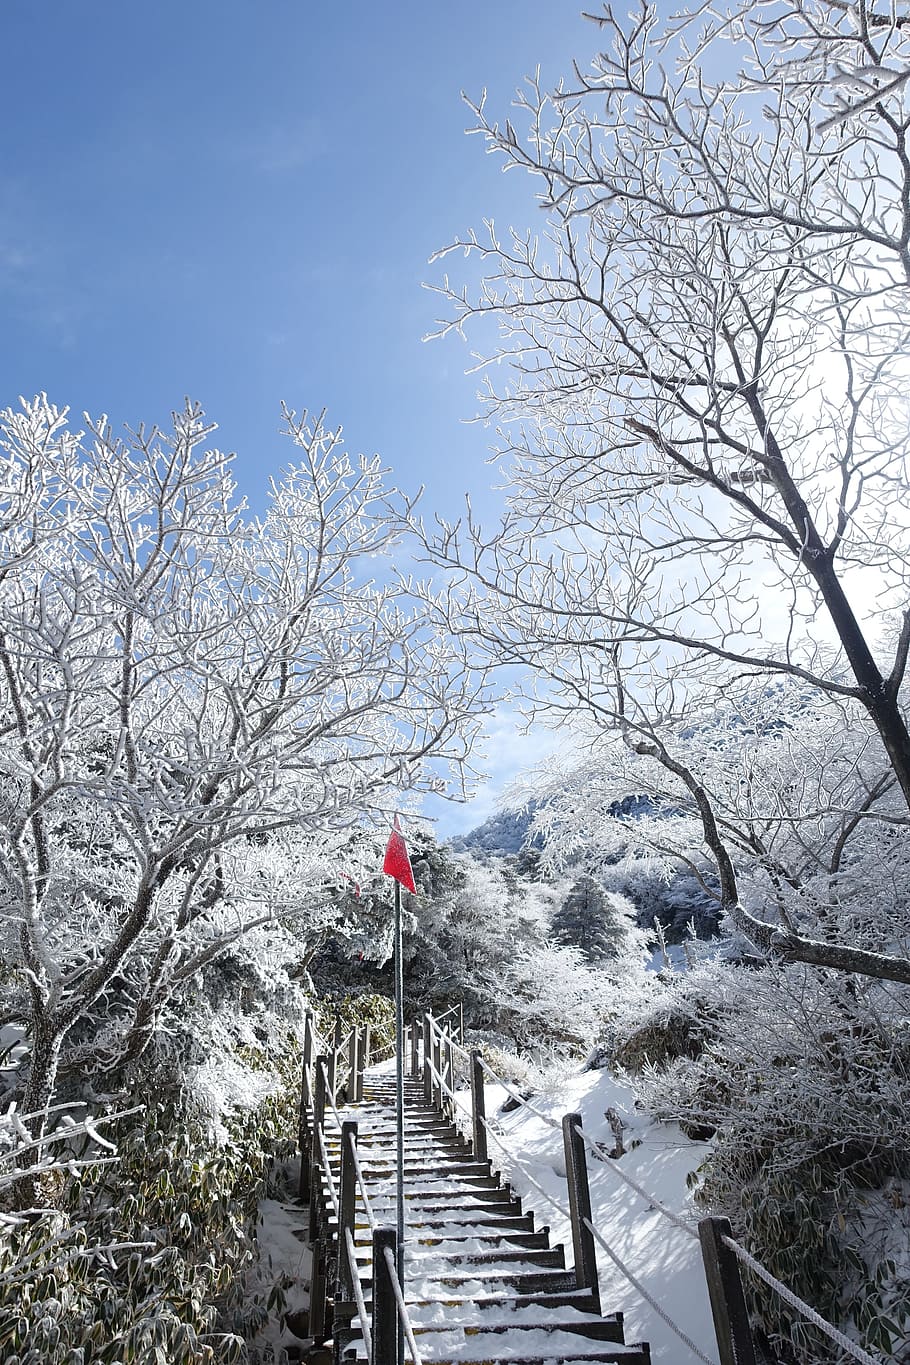 Winter, Snow Mountain, Jeju Island, republic of korea, landscape